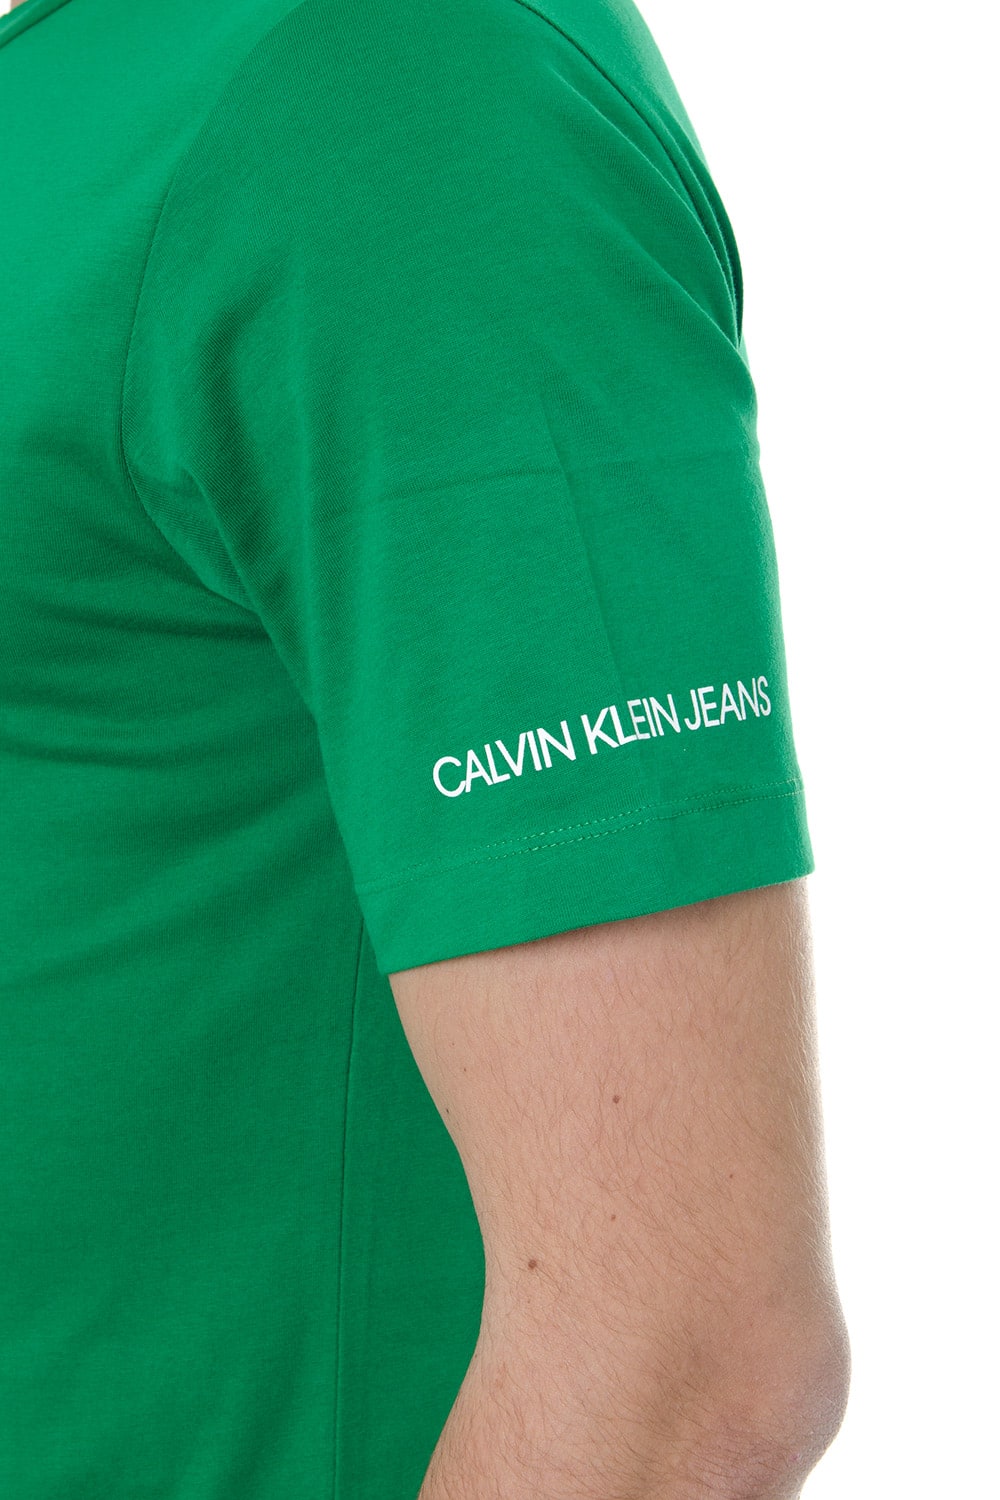 calvin klein green t shirt